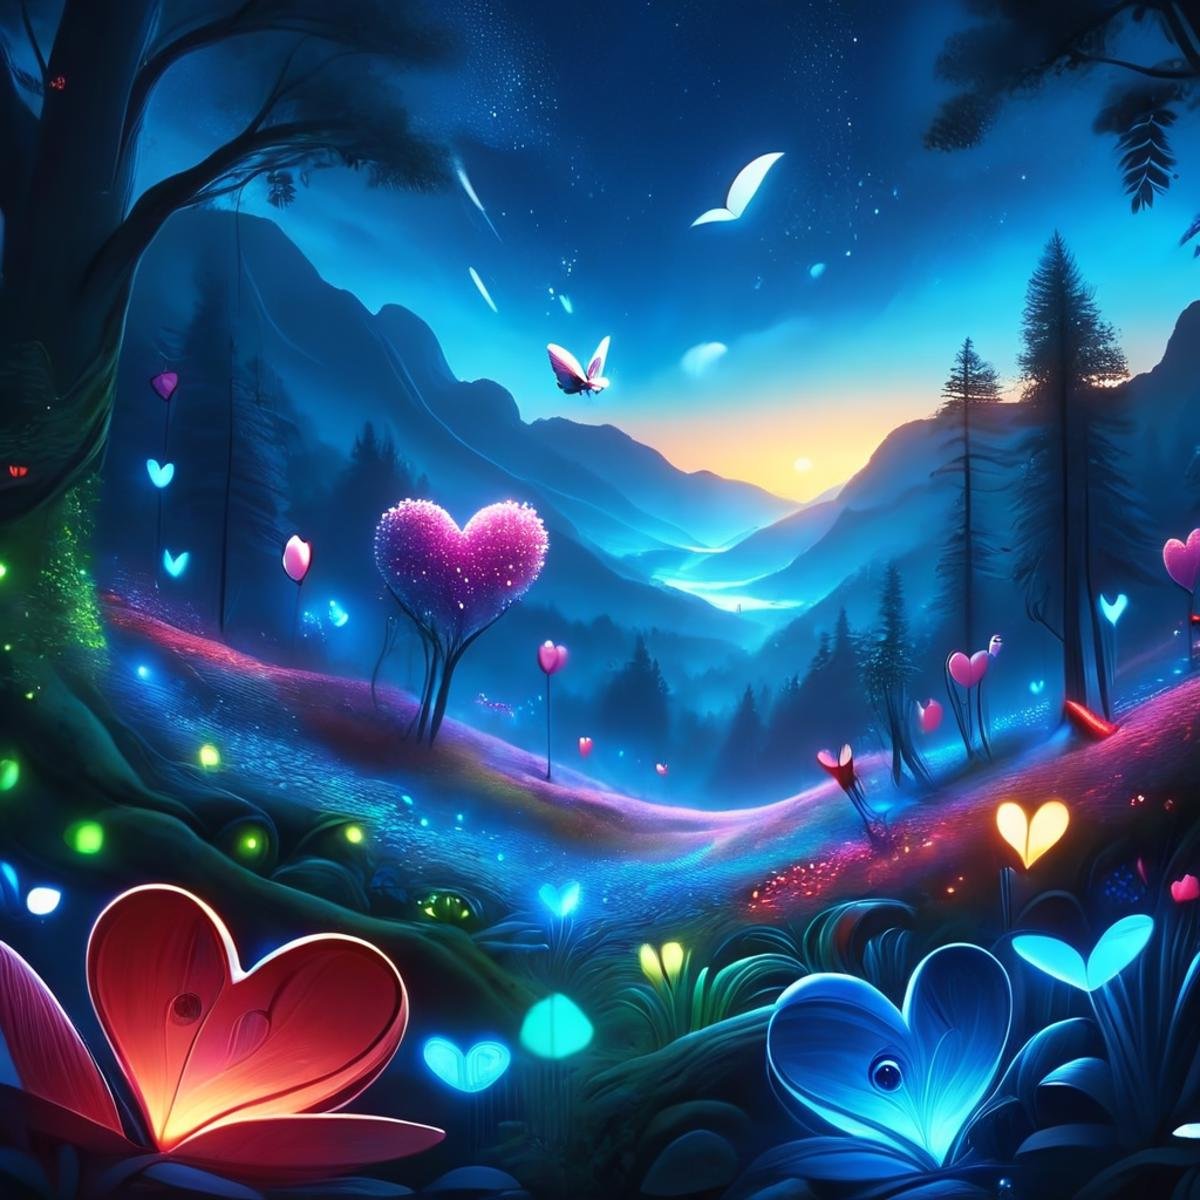 ValentineNatureStyleSDXL,crescent moon, big eyes, fireflies, starry sky, sunset, heart, butterfly, flower, blue sky, night sky, mountain, nature, no humans, bird, forest, 3d, <lora:ValentineNatureStyleSDXL:1>